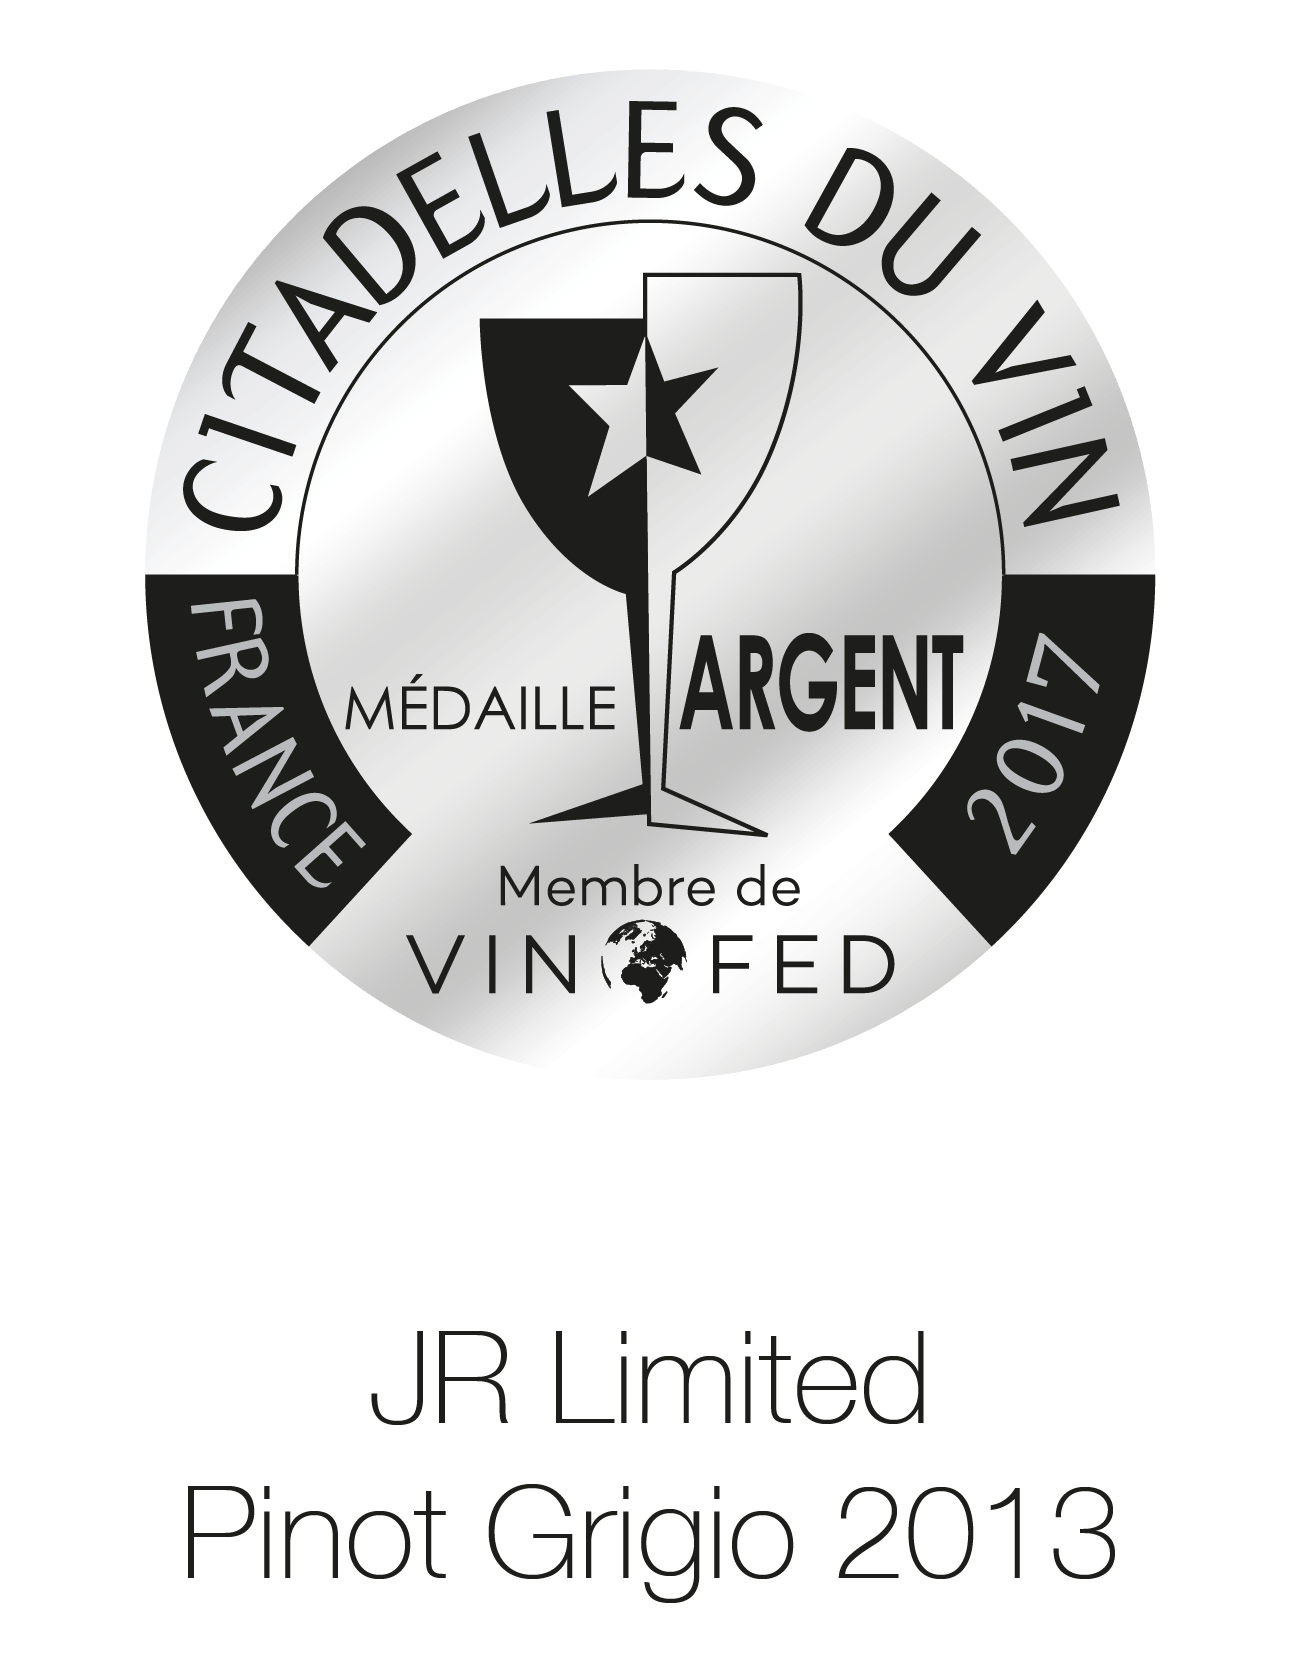 JR Wine - Limited Edition - Pinot Grigio 2013 - France Citadelles Du Vin 2017